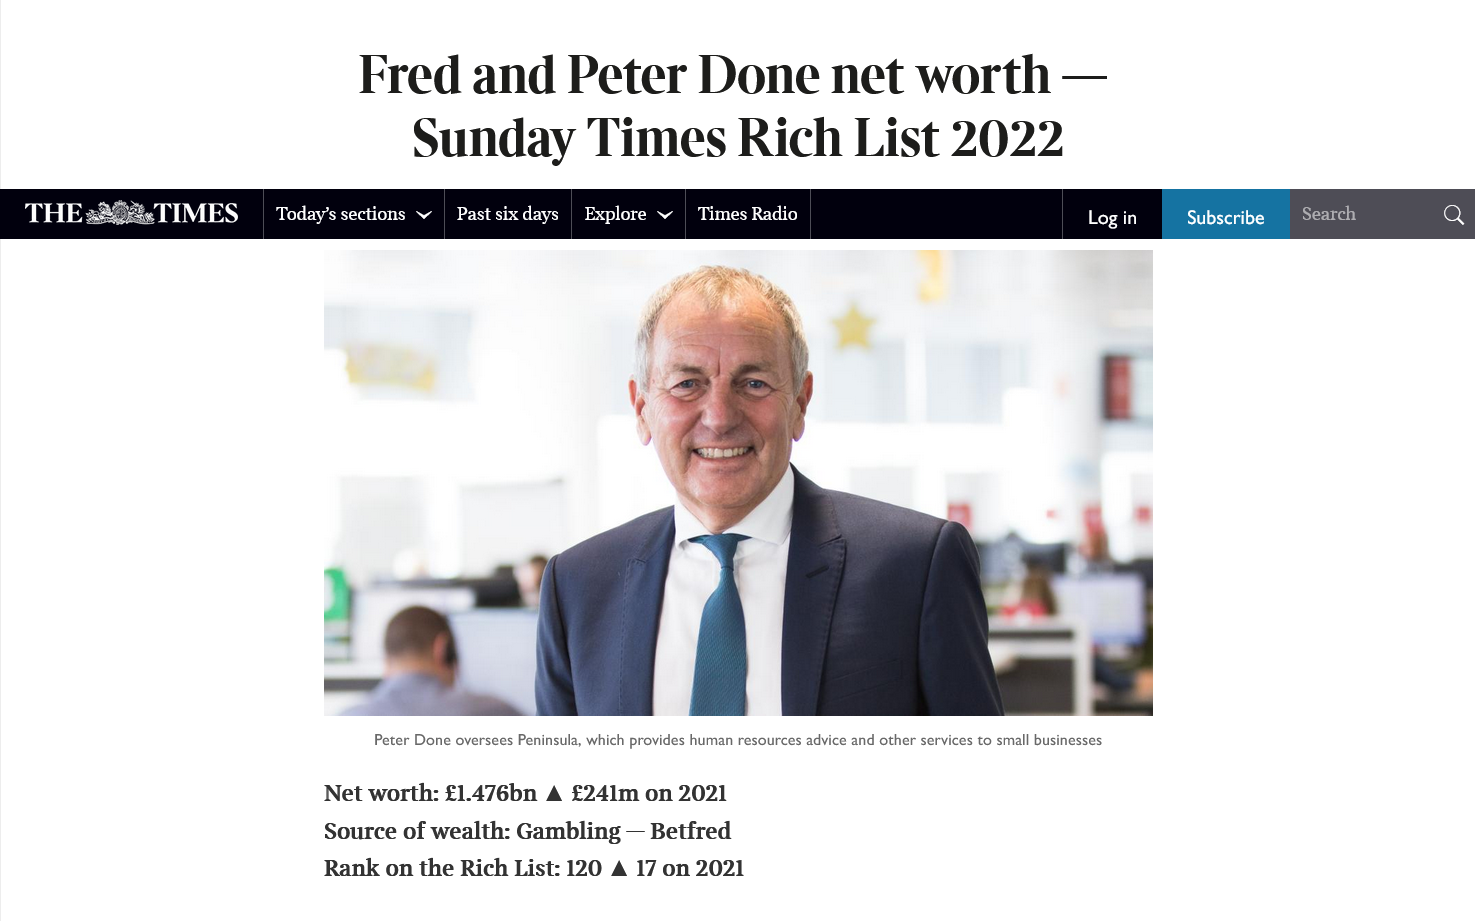 Sunday Times Rich lijst met de rijkste mensen van expolitatie van